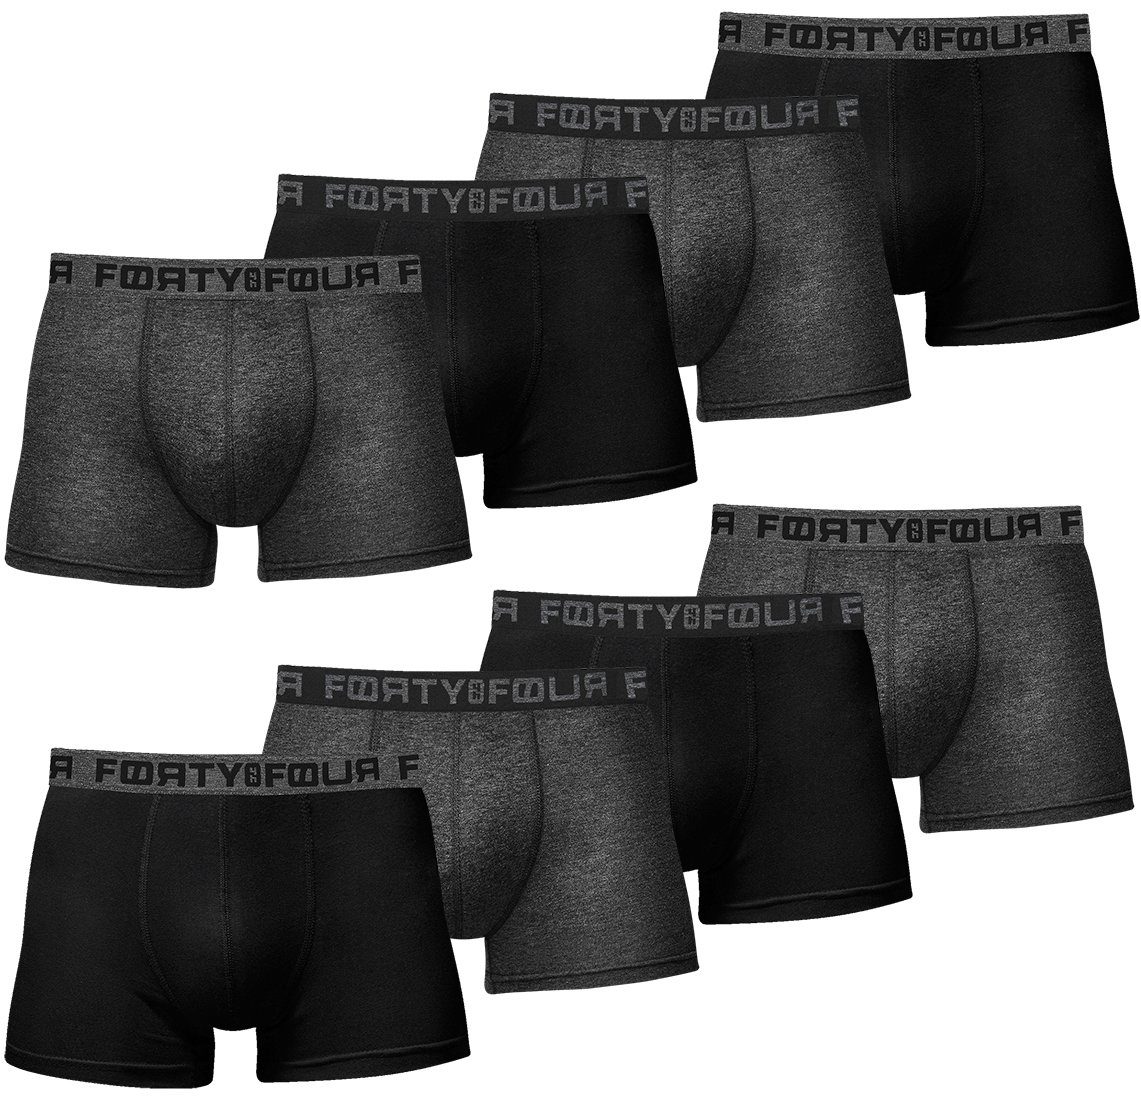 S 716e-schwarz/anthrazit Pack) Premium Männer Qualität - 8er (Vorteilspack, Herren Passform Unterhosen Boxershorts FortyFour perfekte 7XL Baumwolle